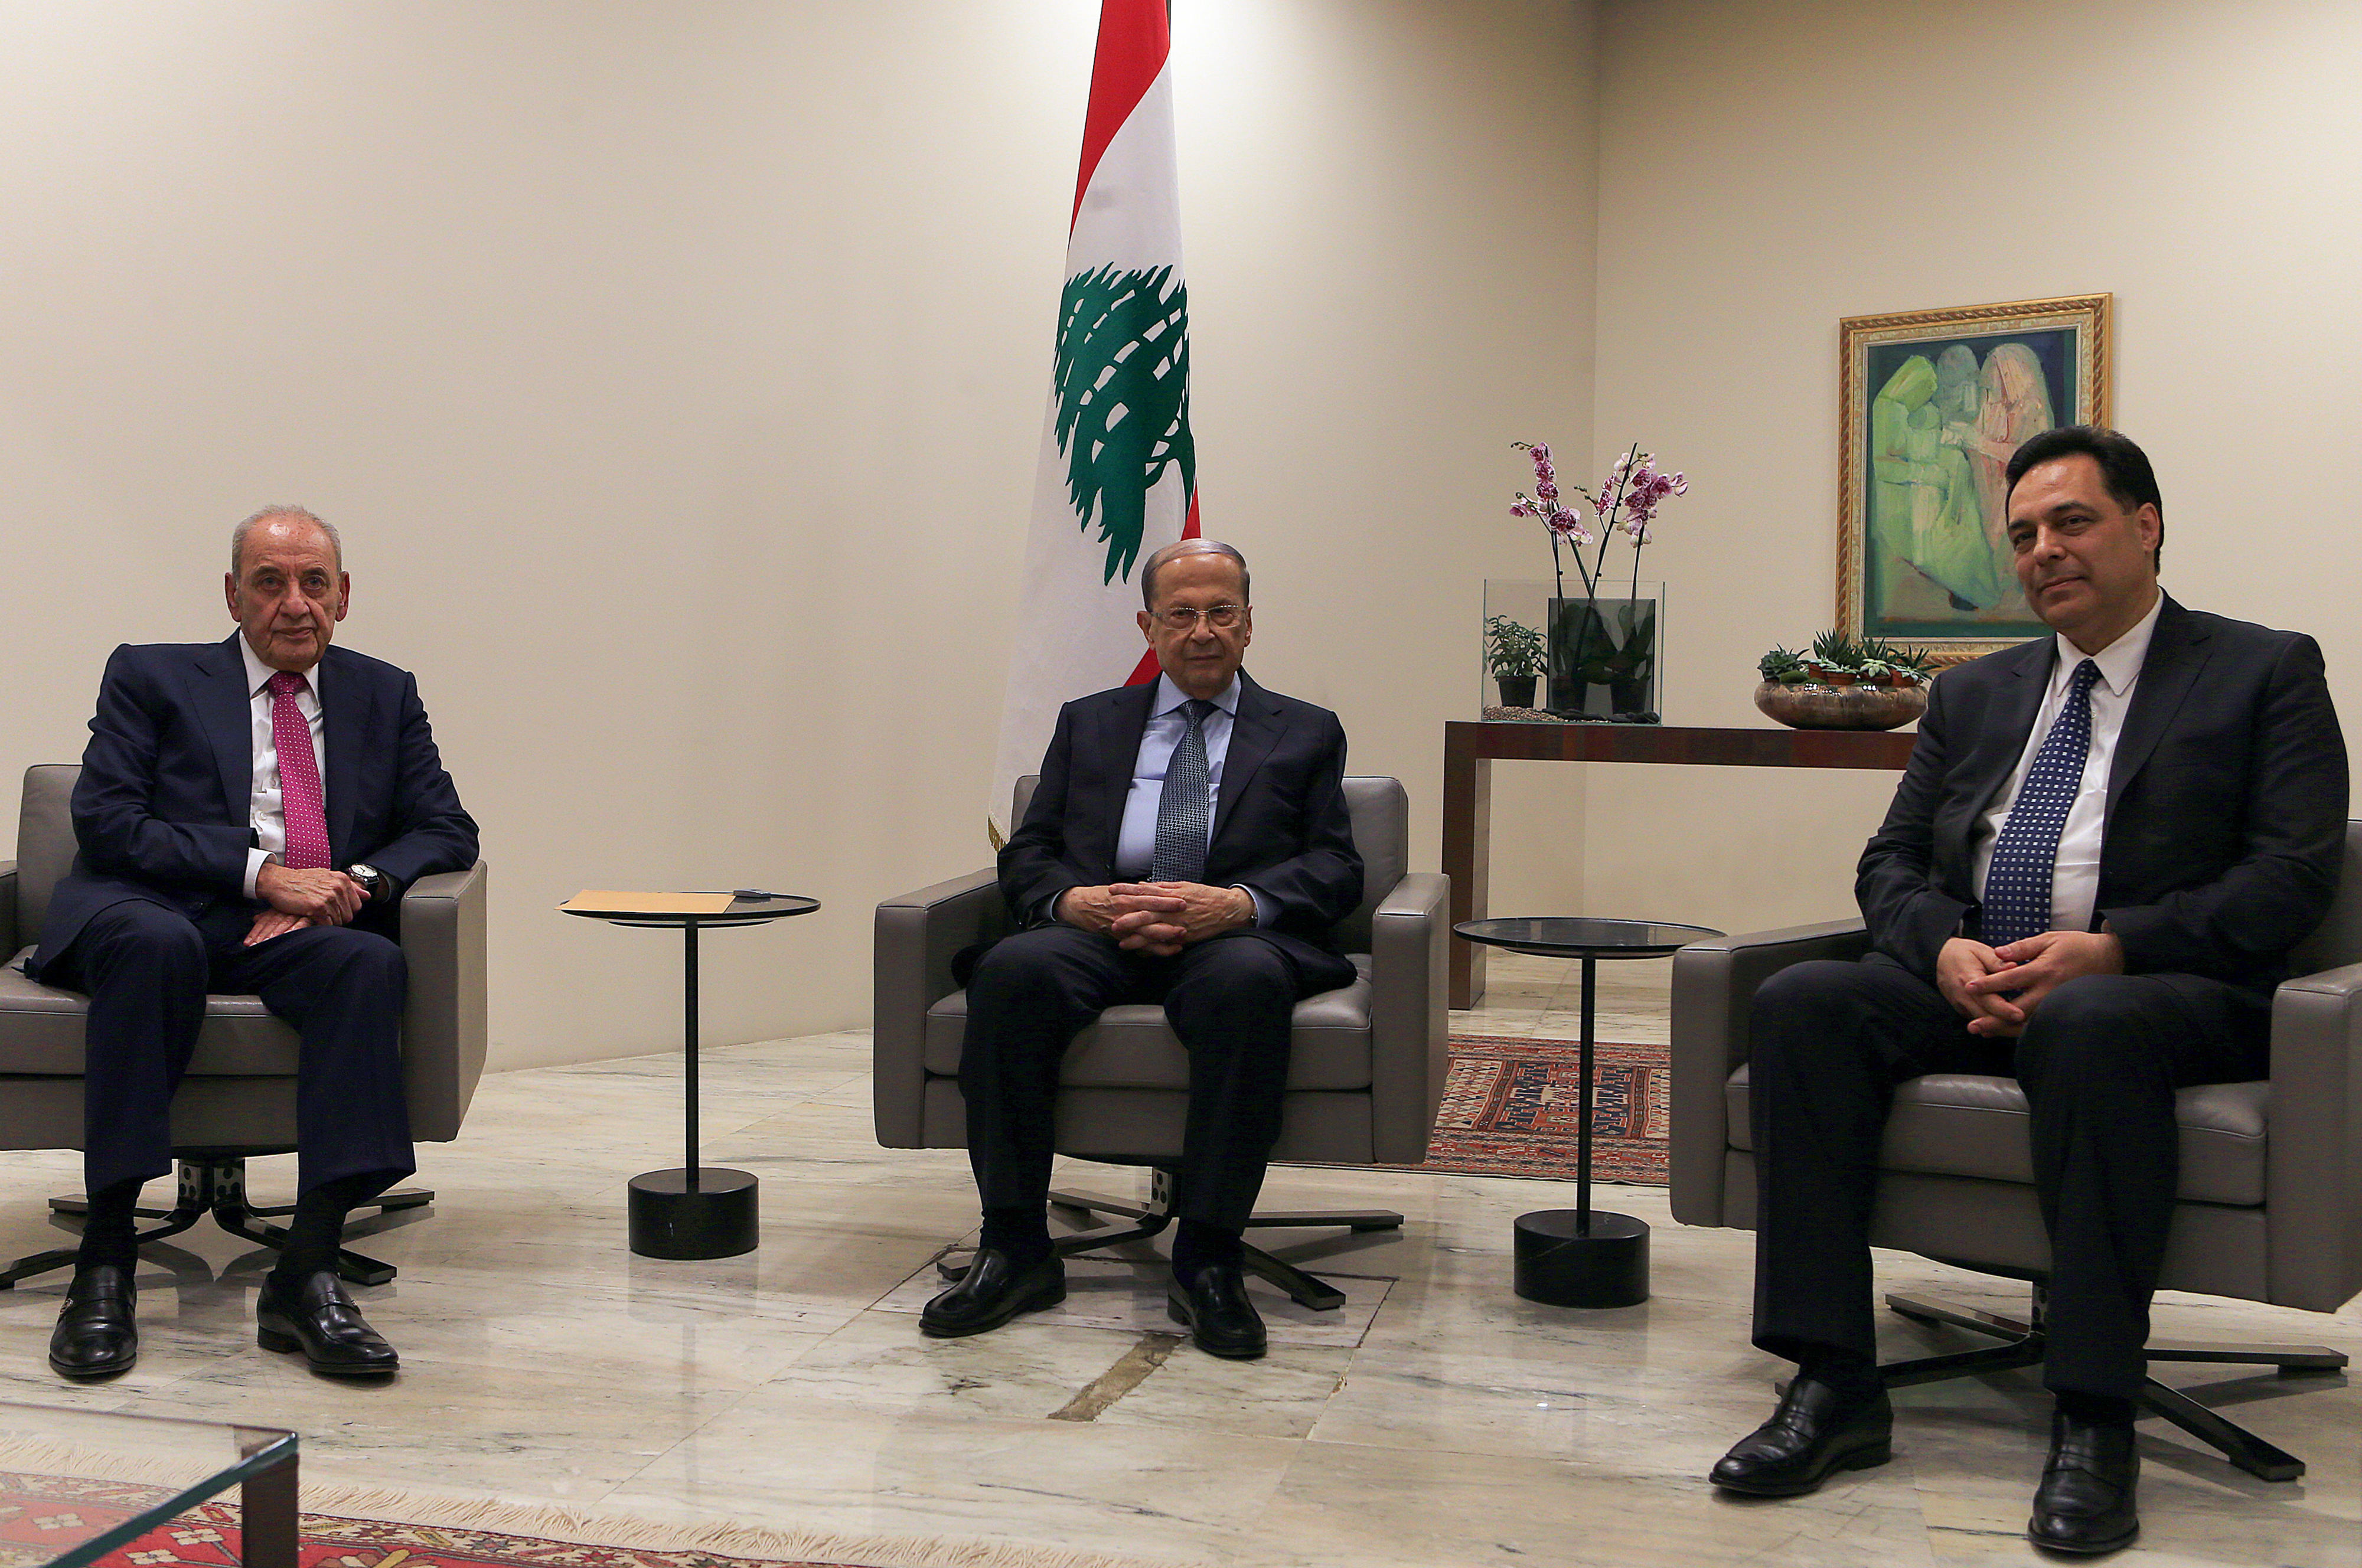 Le président libanais Michel Aoun (centre) rencontre le Premier ministre désigné Hassan Diab (à droite) et le président du Parlement Nabih Berri au palais présidentiel de Baabda (AFP)